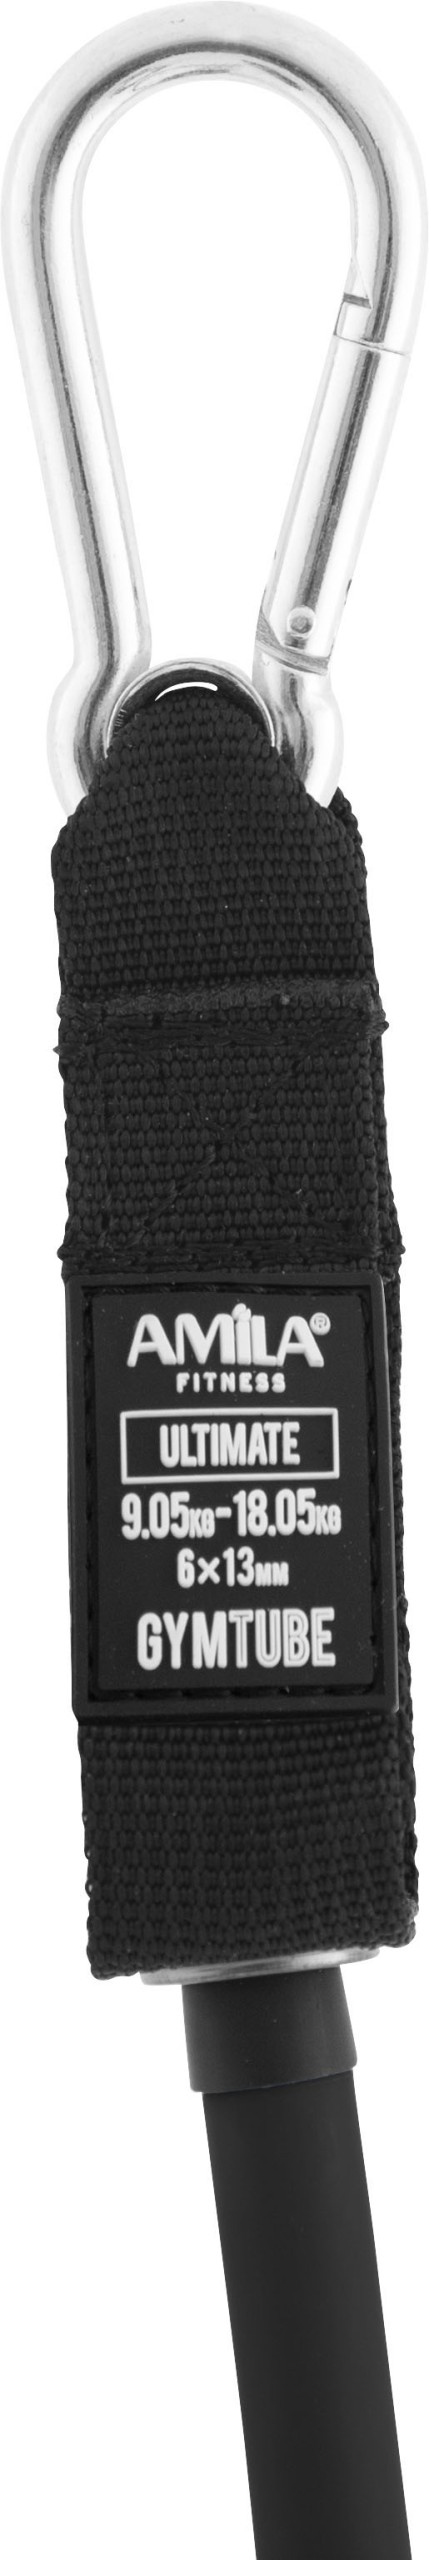 Λάστιχο Αντίστασης AMILA GymTube με Clip Ultimate